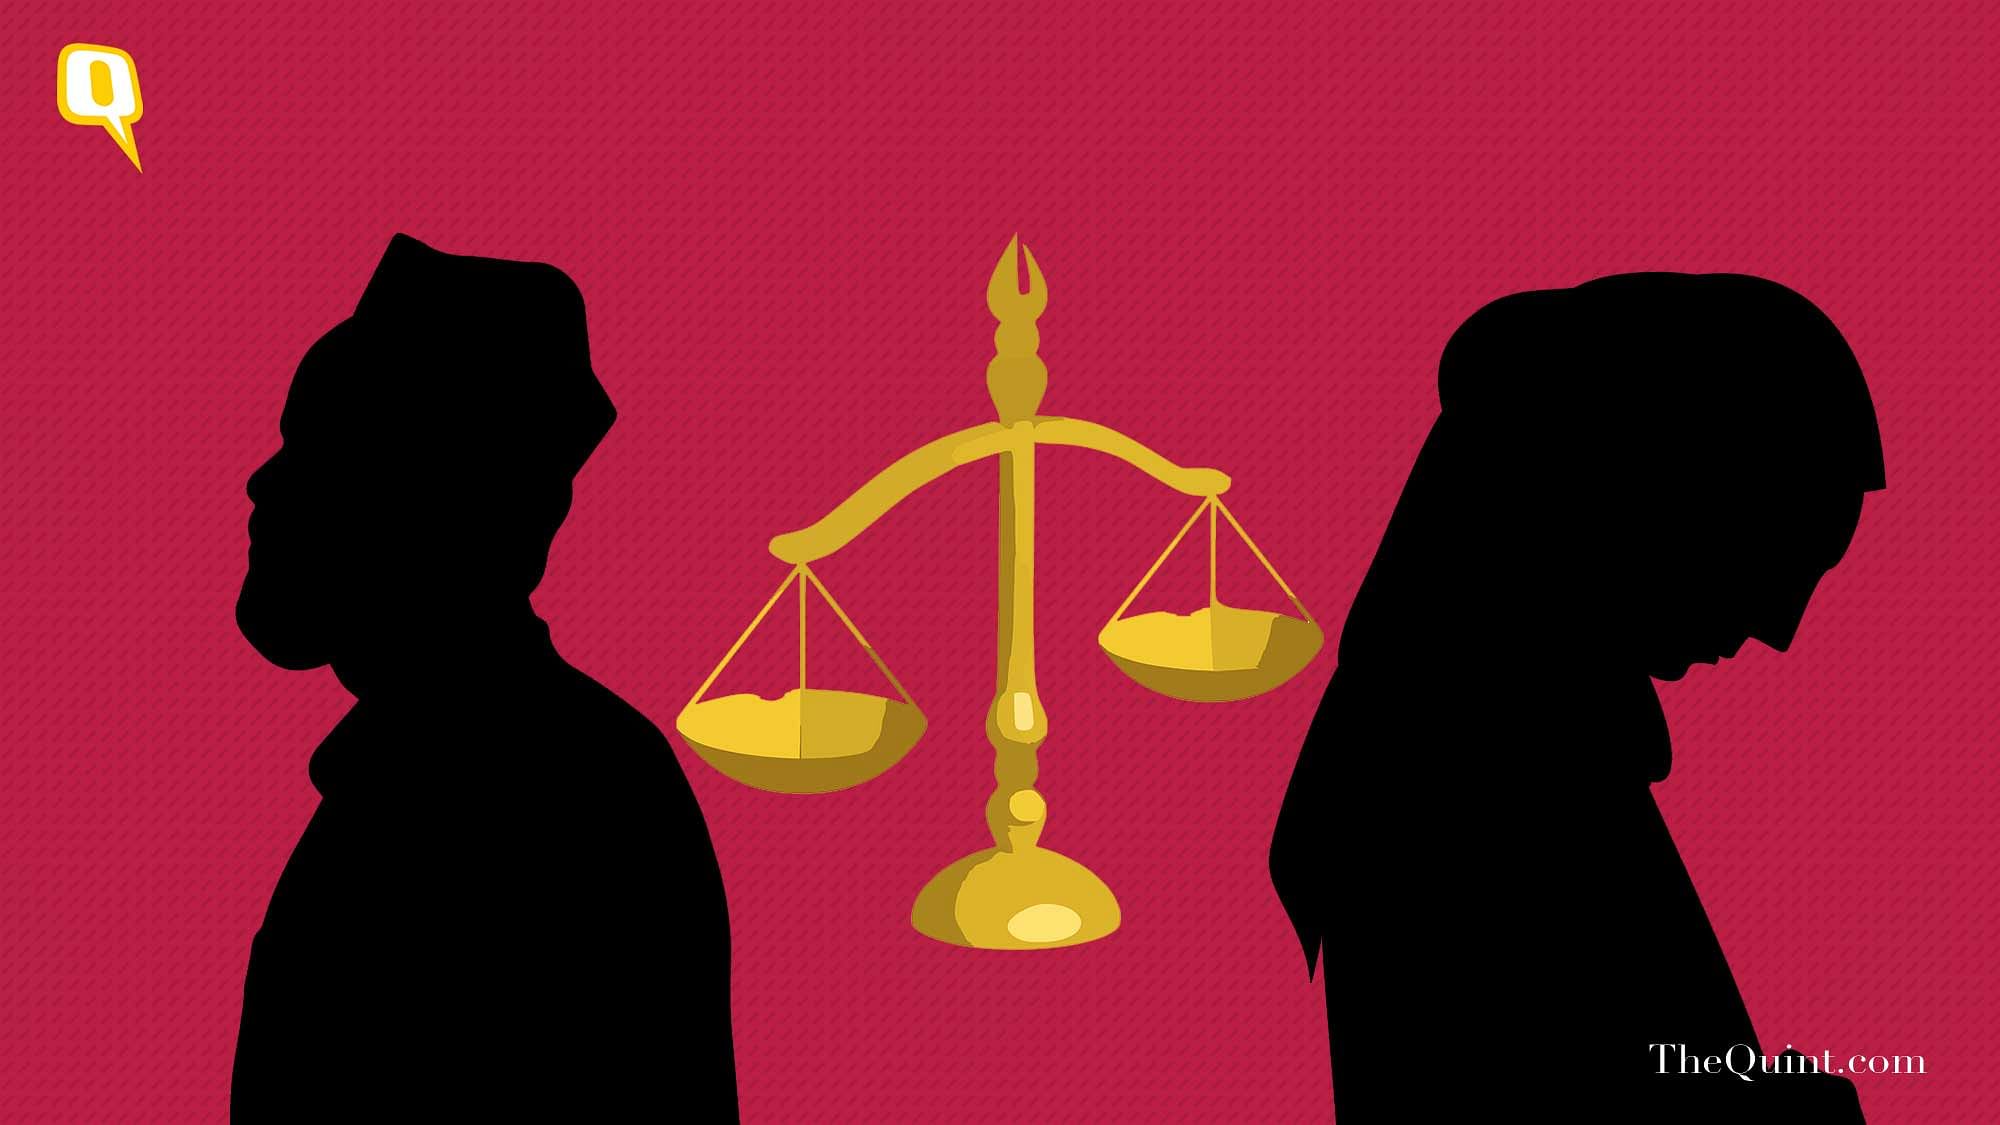 ट्रिपल तलाक विधेयक को लेकर मुस्लिम महिलाओं के मन में सवाल है कि पति को जेल होने के बाद उनका खर्च कौन उठाएगा.